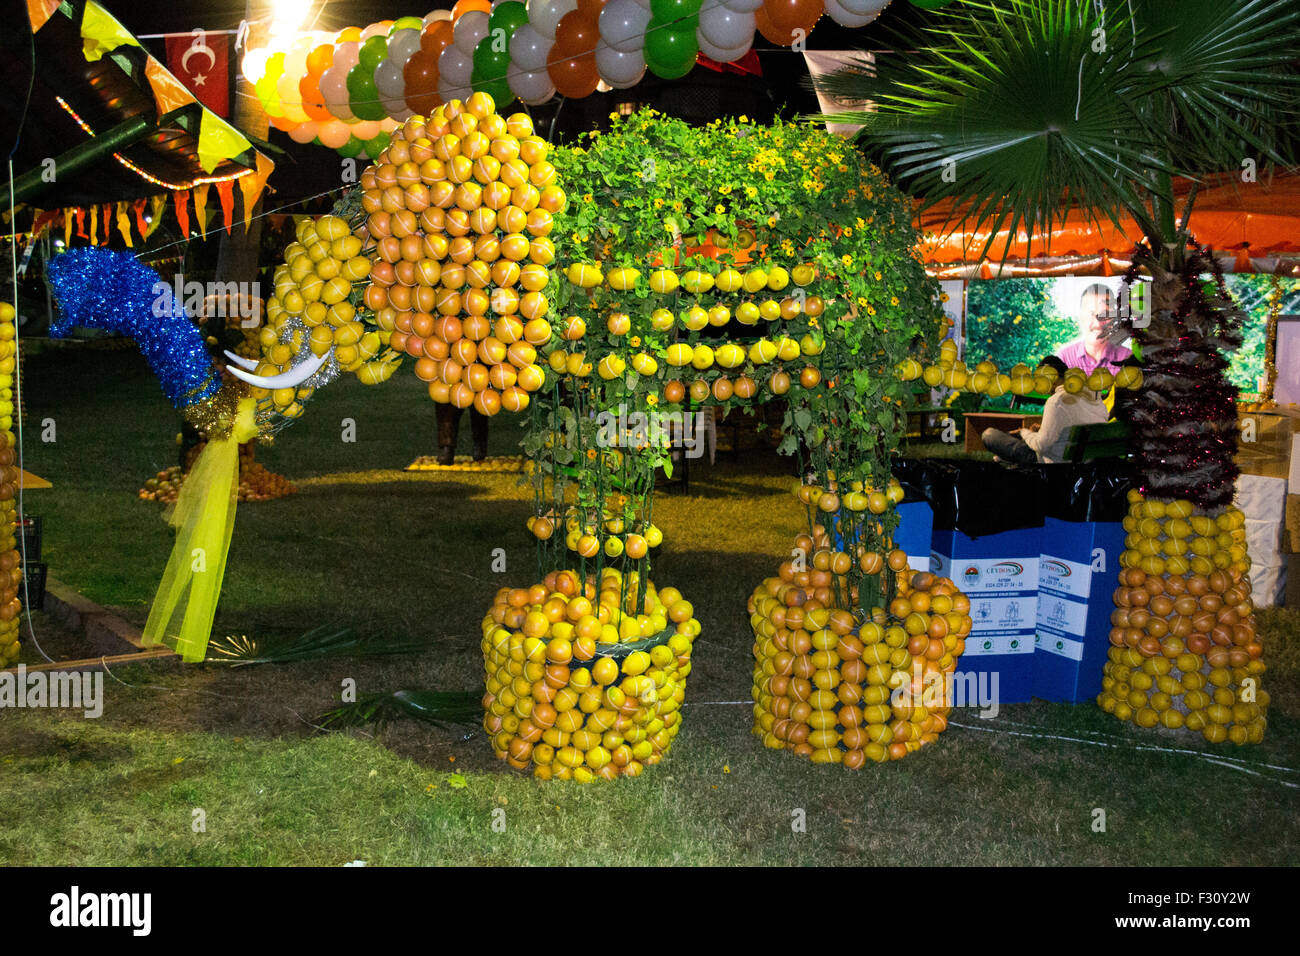 Un éléphant dans un festival fait d'oranges, mandarines et citrons. Banque D'Images